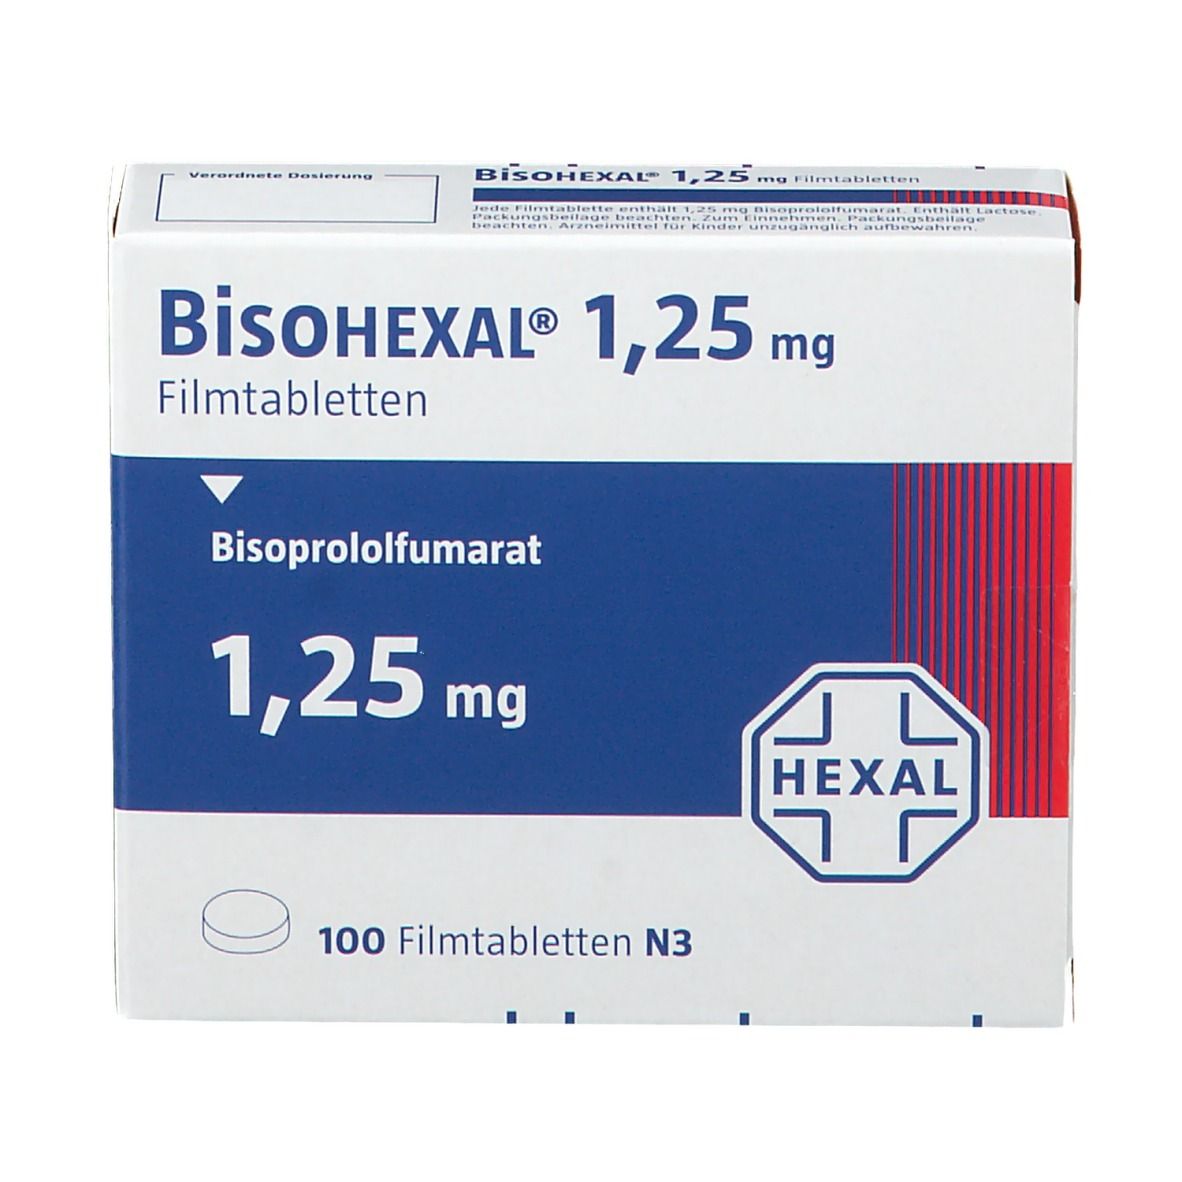 BisoHEXAL® 1,25 mg